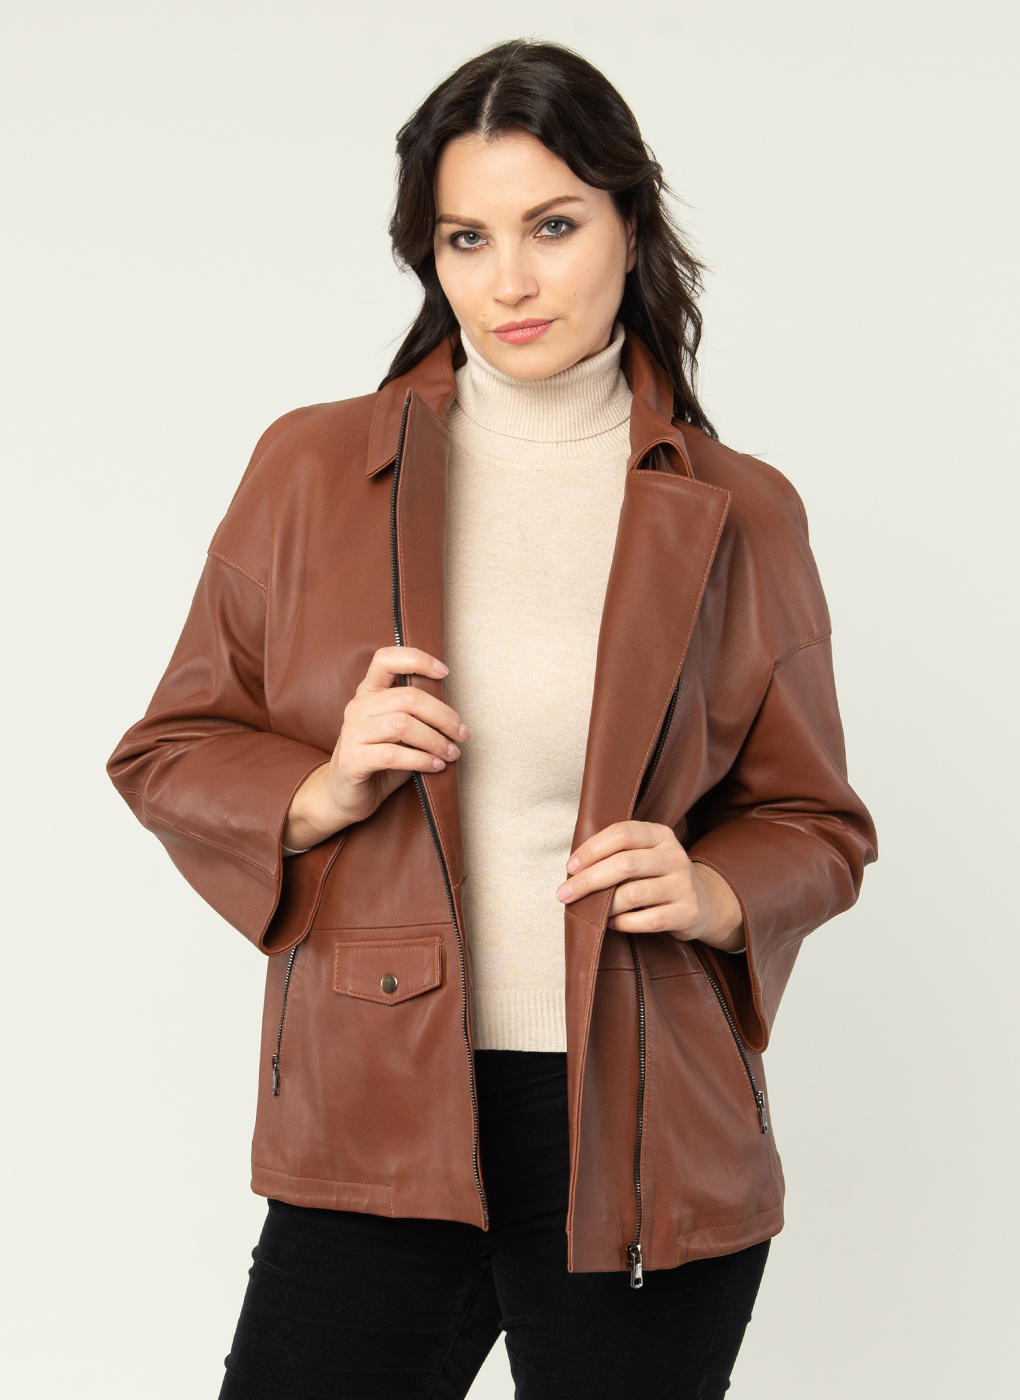 Кожаная куртка женская Каляев 52511 коричневая 52 RU